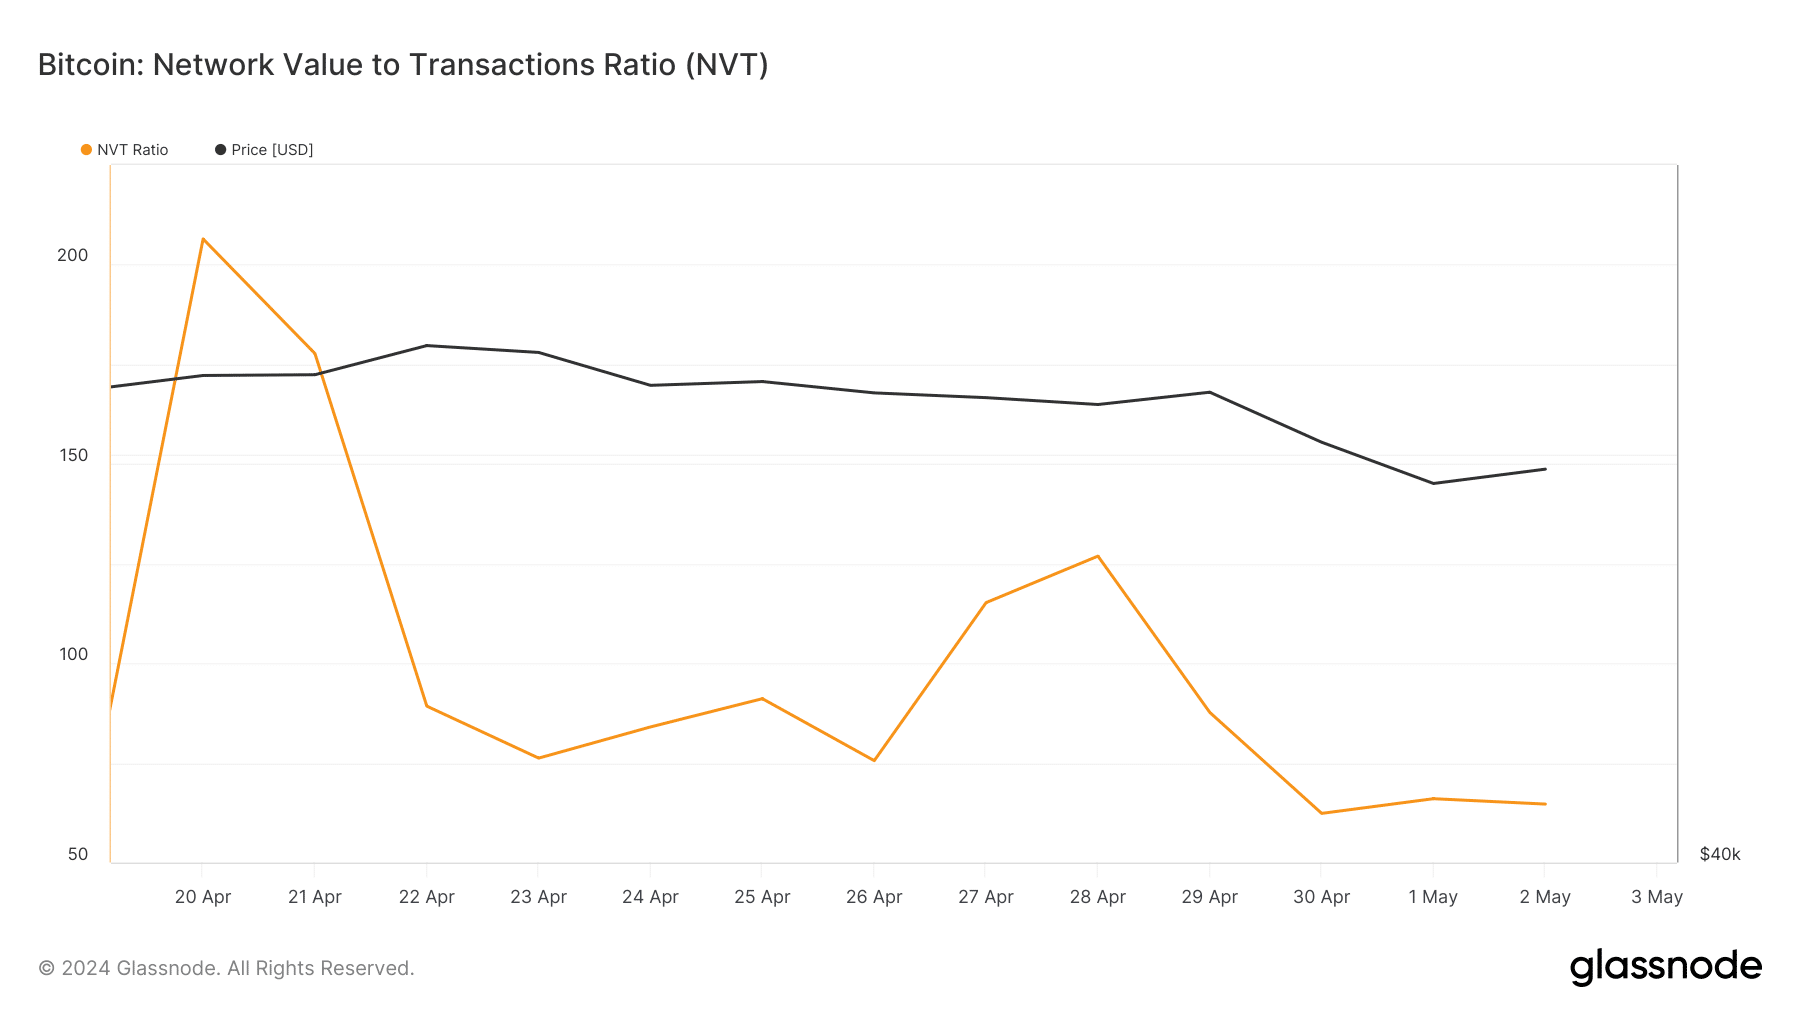 Bitcoin's NVT ratio fell